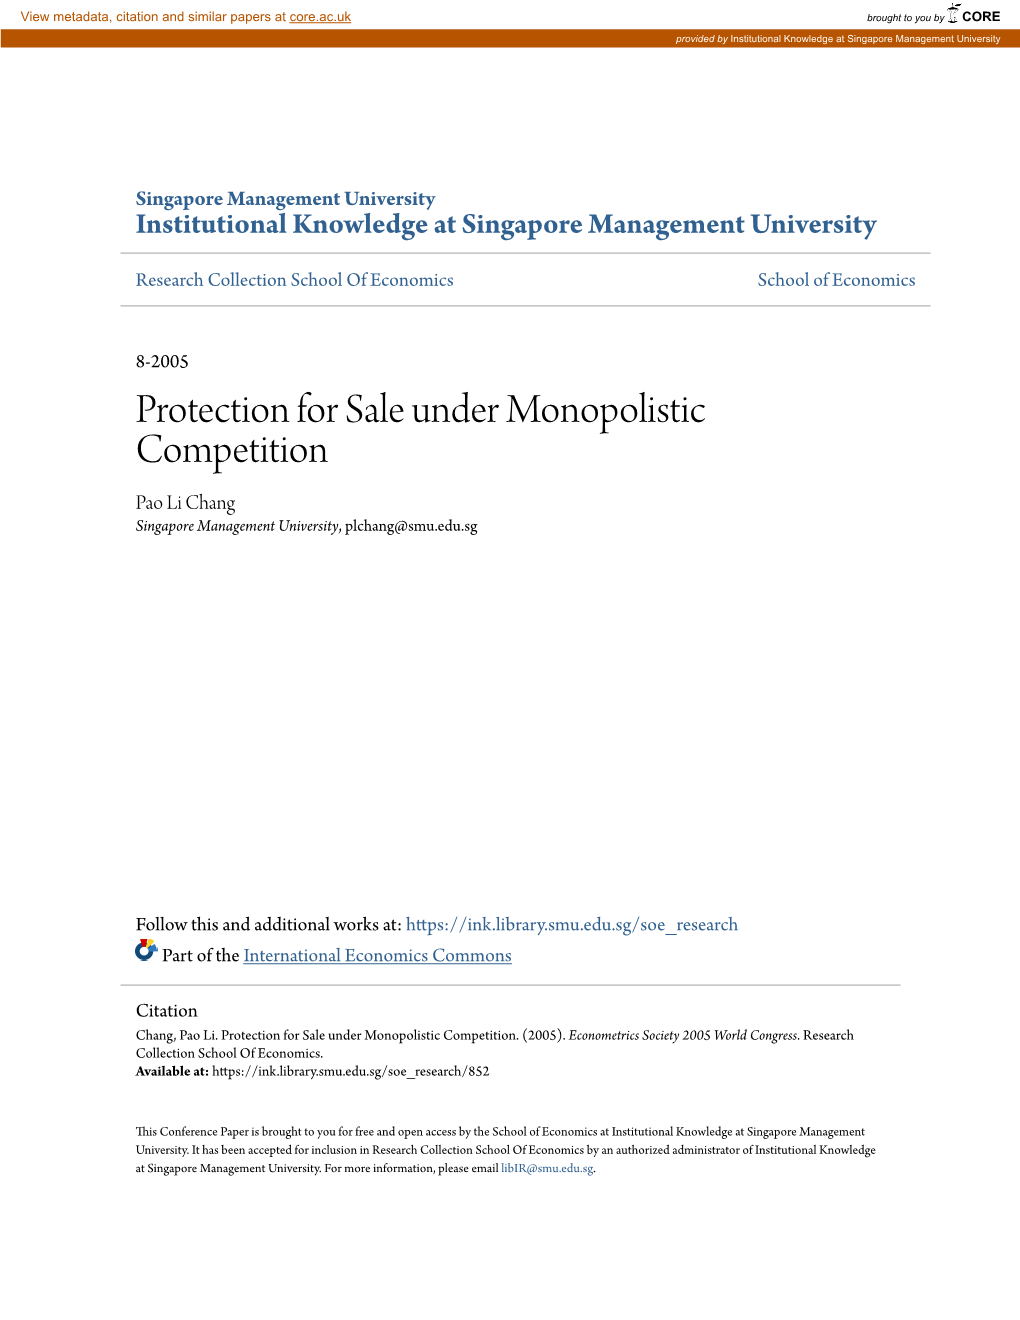 Protection for Sale Under Monopolistic Competition Pao Li Chang Singapore Management University, Plchang@Smu.Edu.Sg